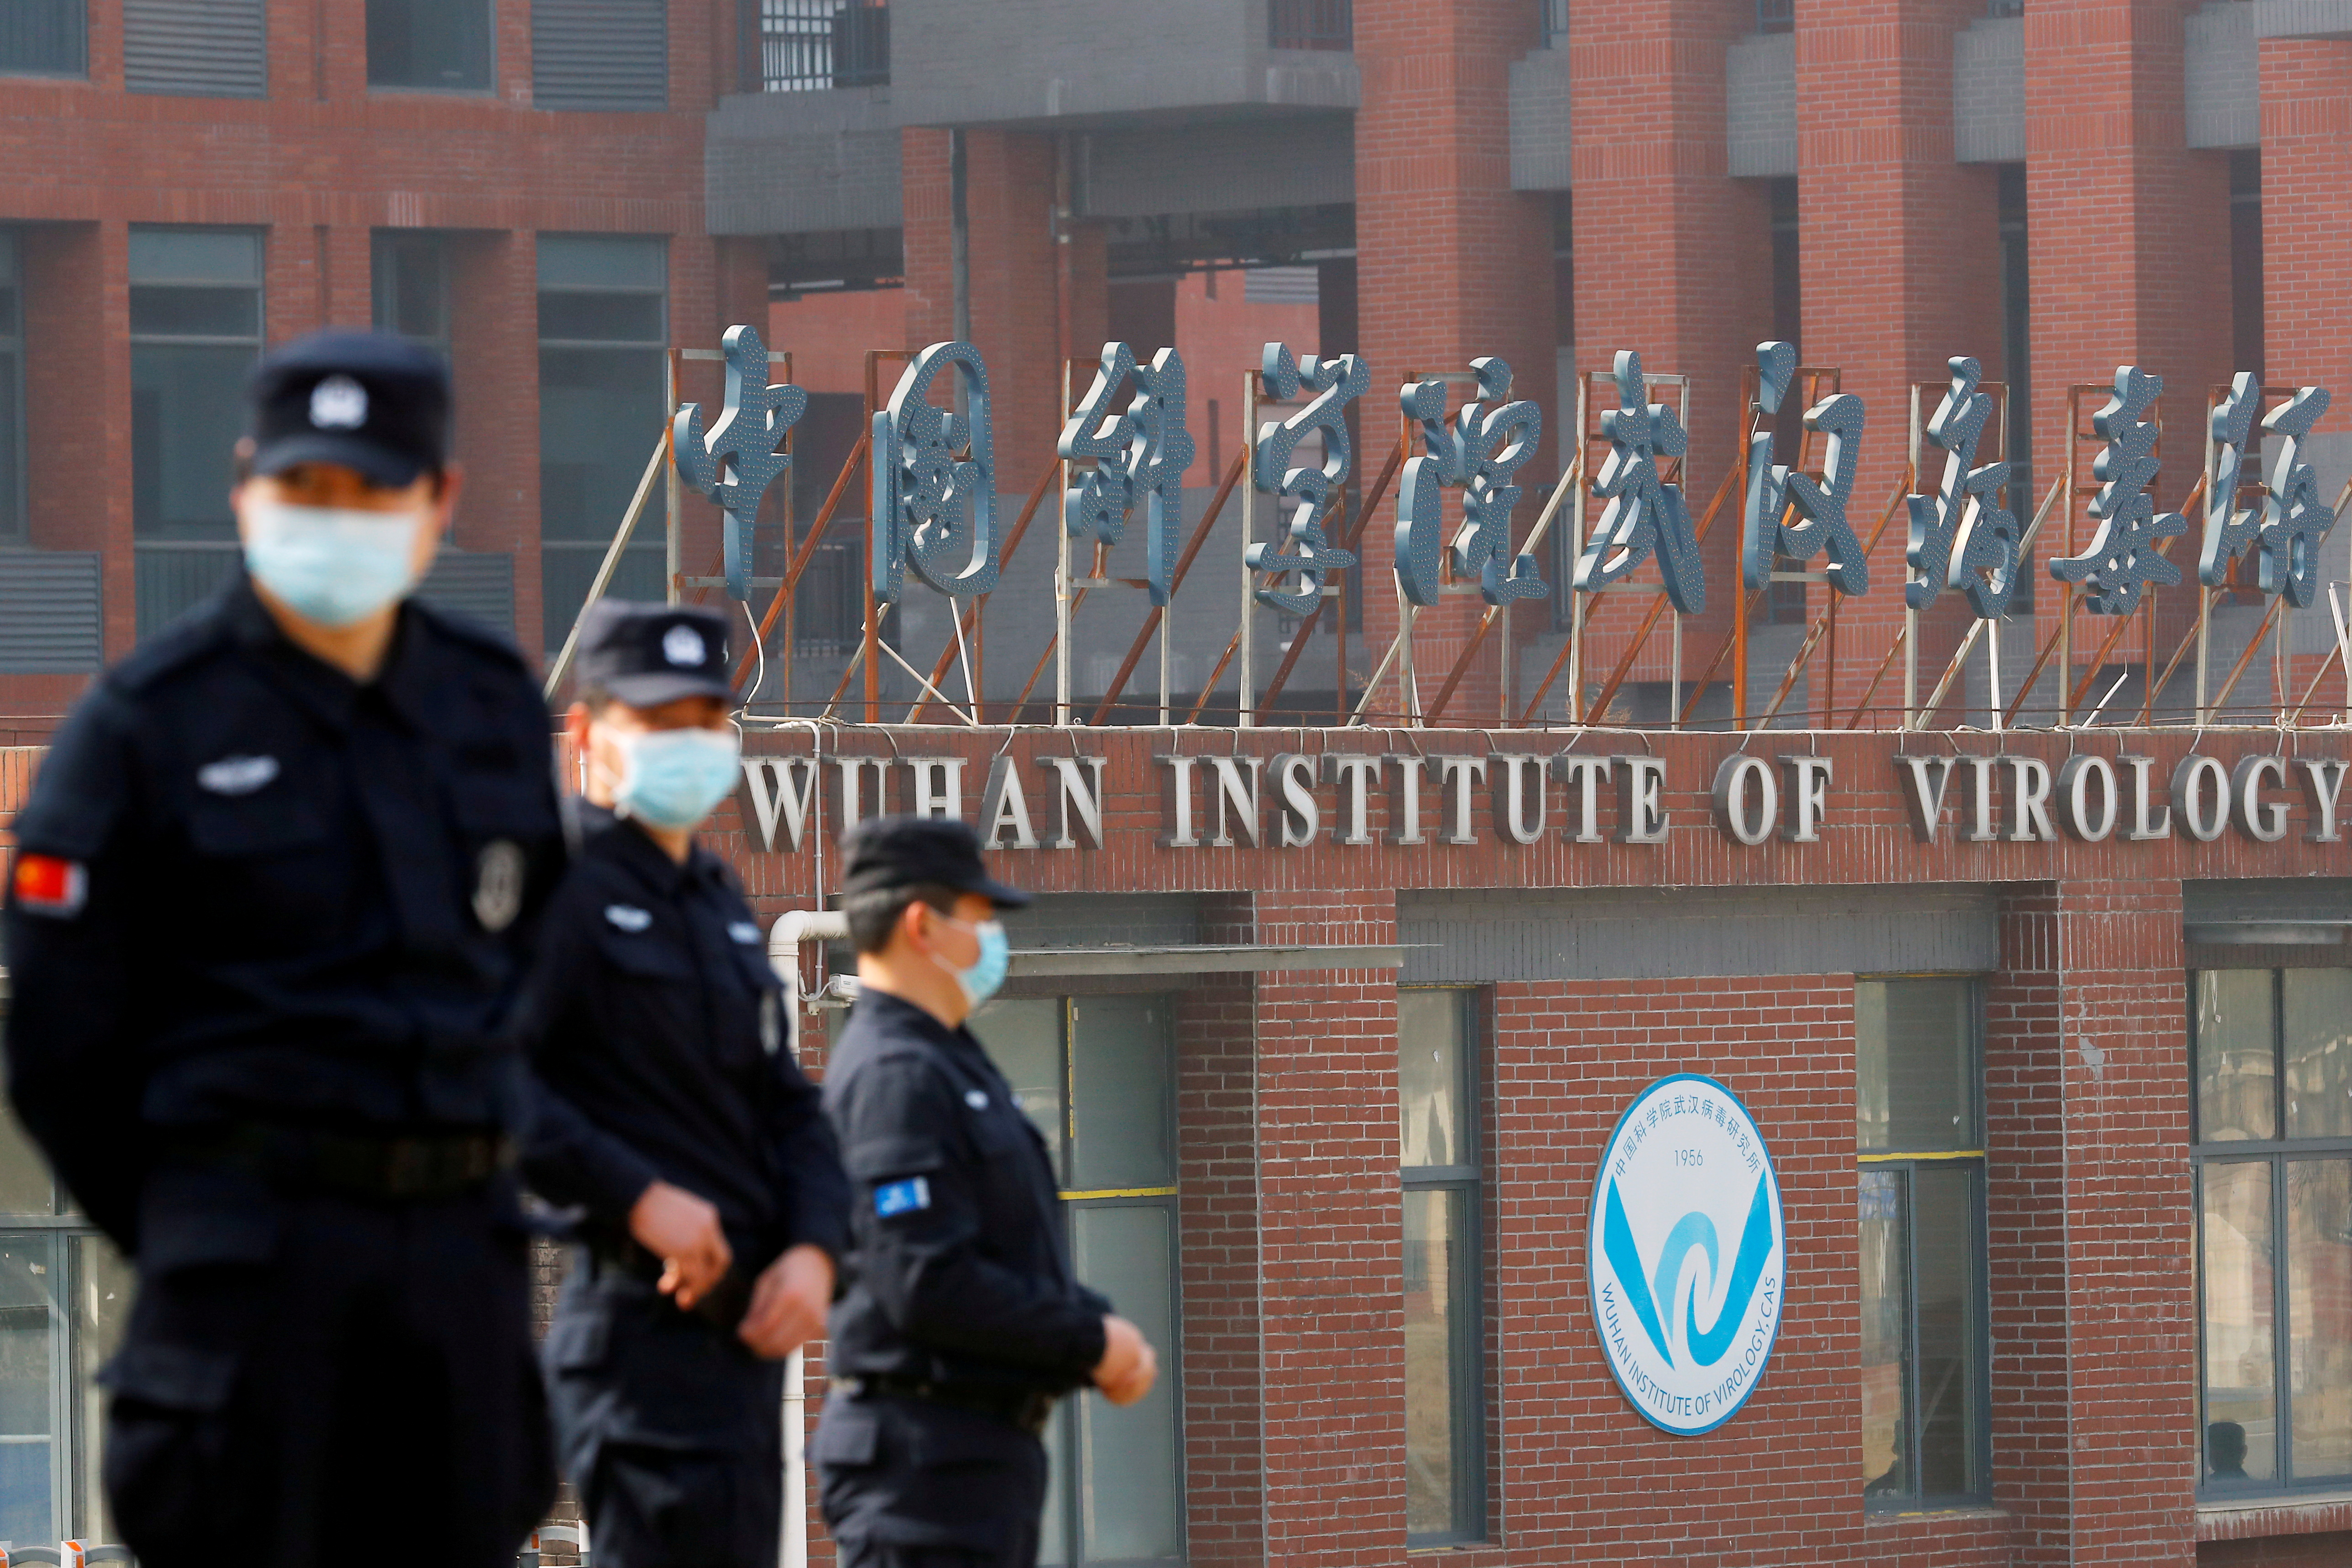 El laboratorio de Wuhan, un instituto de virología señalado desde el comienzo como posible origen de la pandemia (REUTERS/Thomas Peter/Archivo)